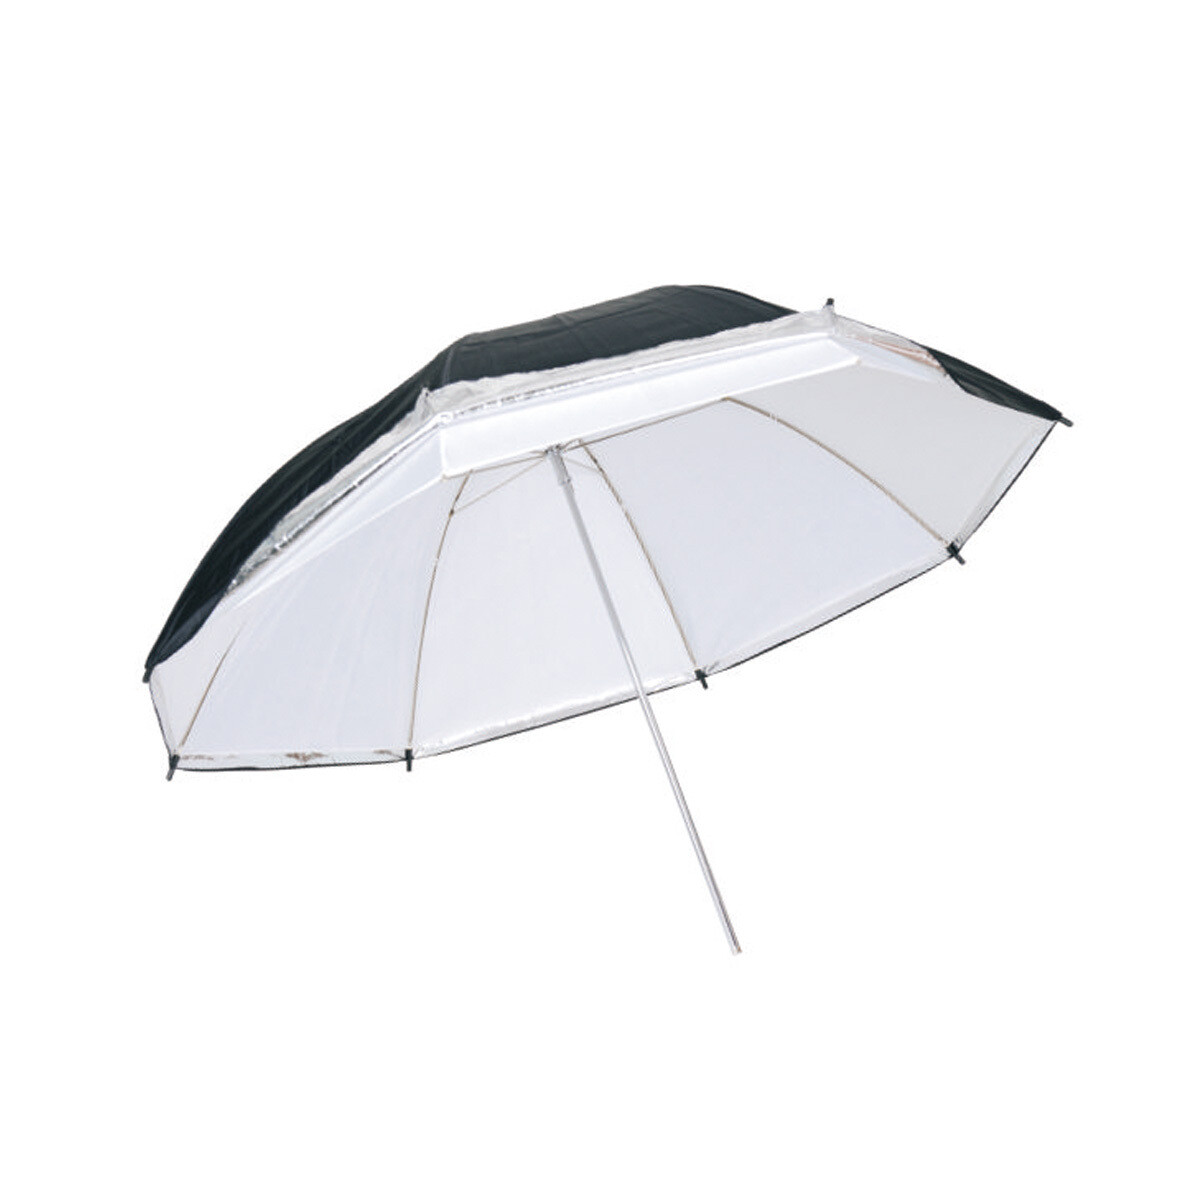 Double-layer Umbrella 150cm